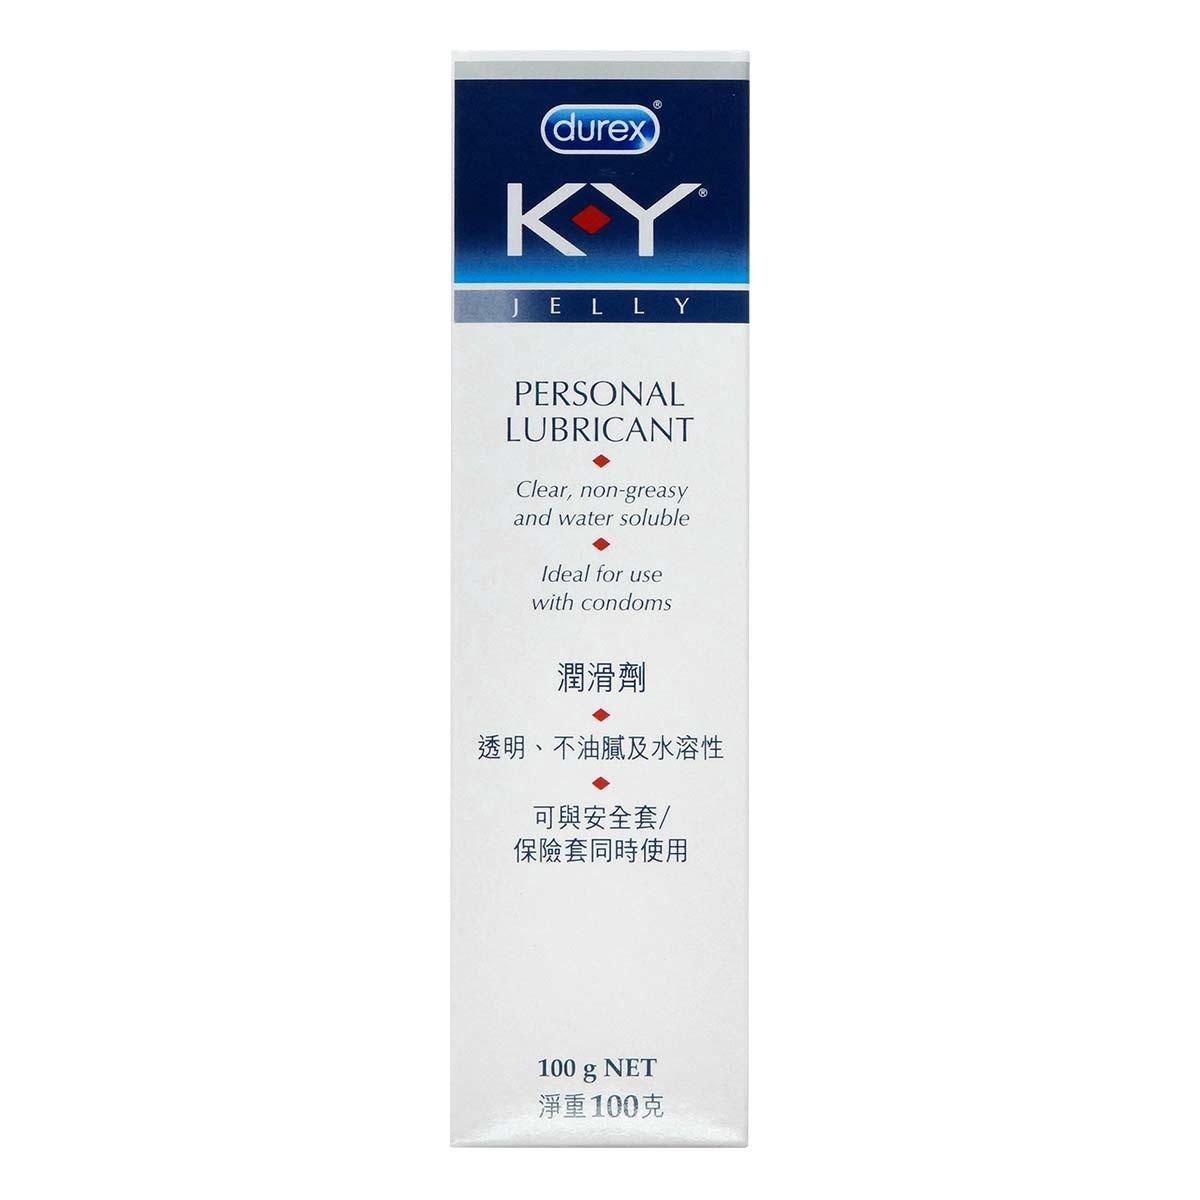 杜蕾斯 K-Y Jelly 水溶性潤滑劑 - 100克